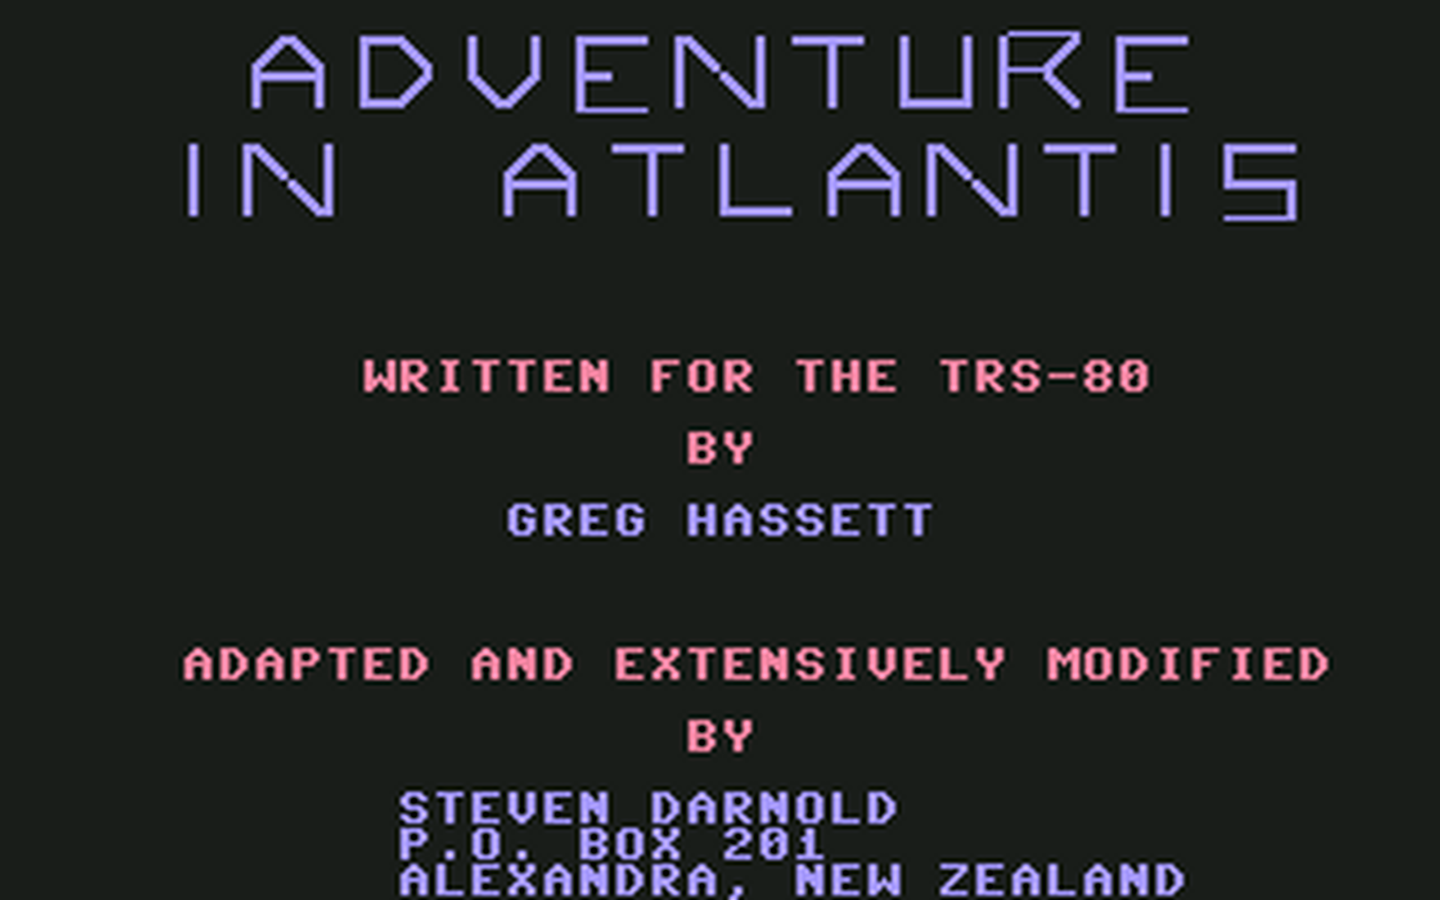 C64 GameBase Adventure_in_Atlantis (Public_Domain)